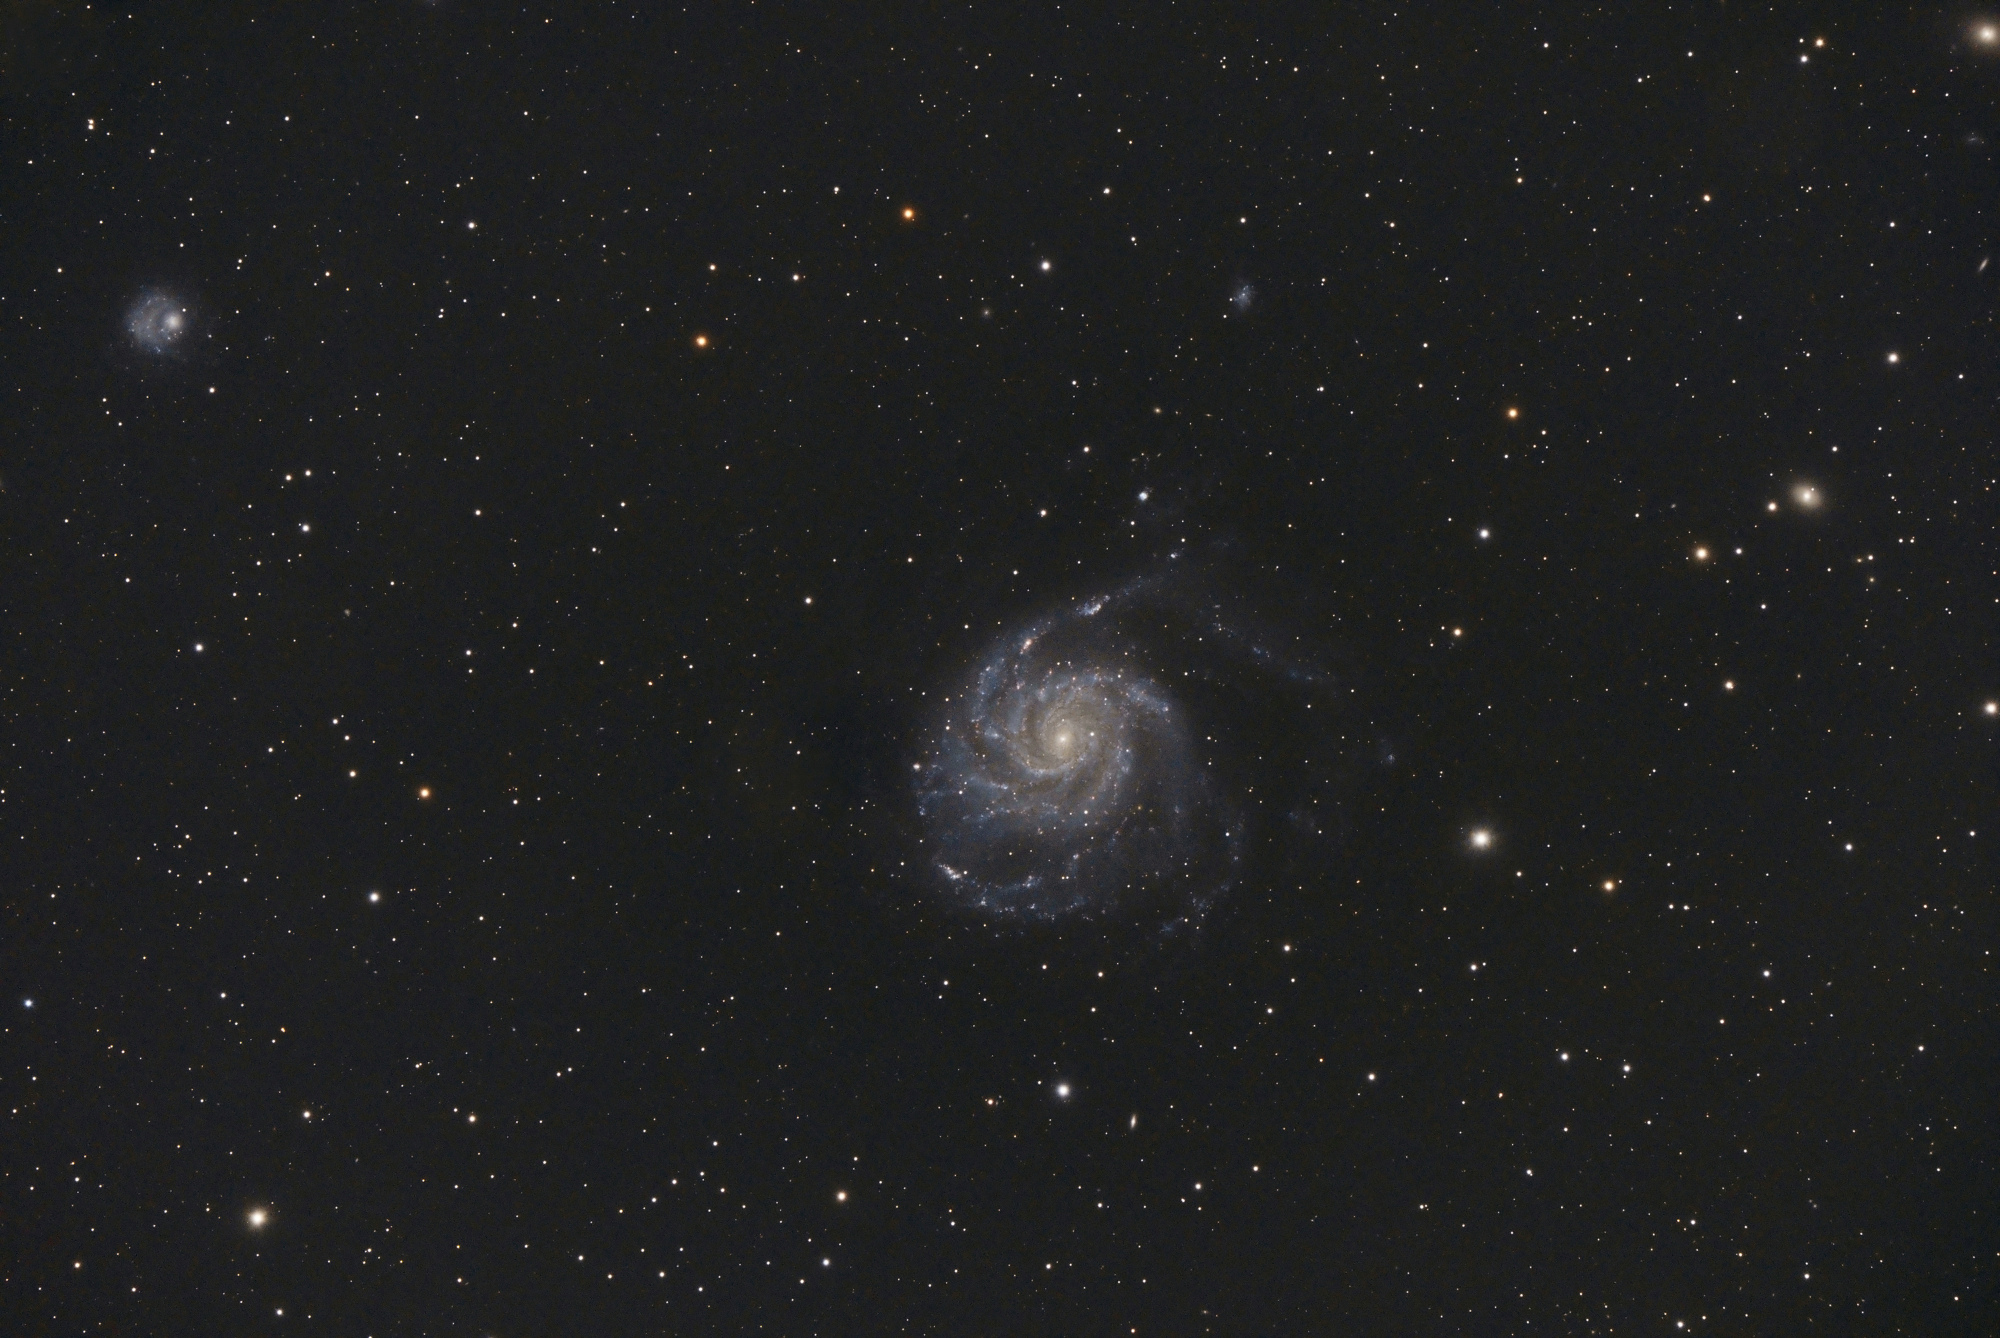 M101_SIRIL-1-cs5-2-FINAL-8.jpg